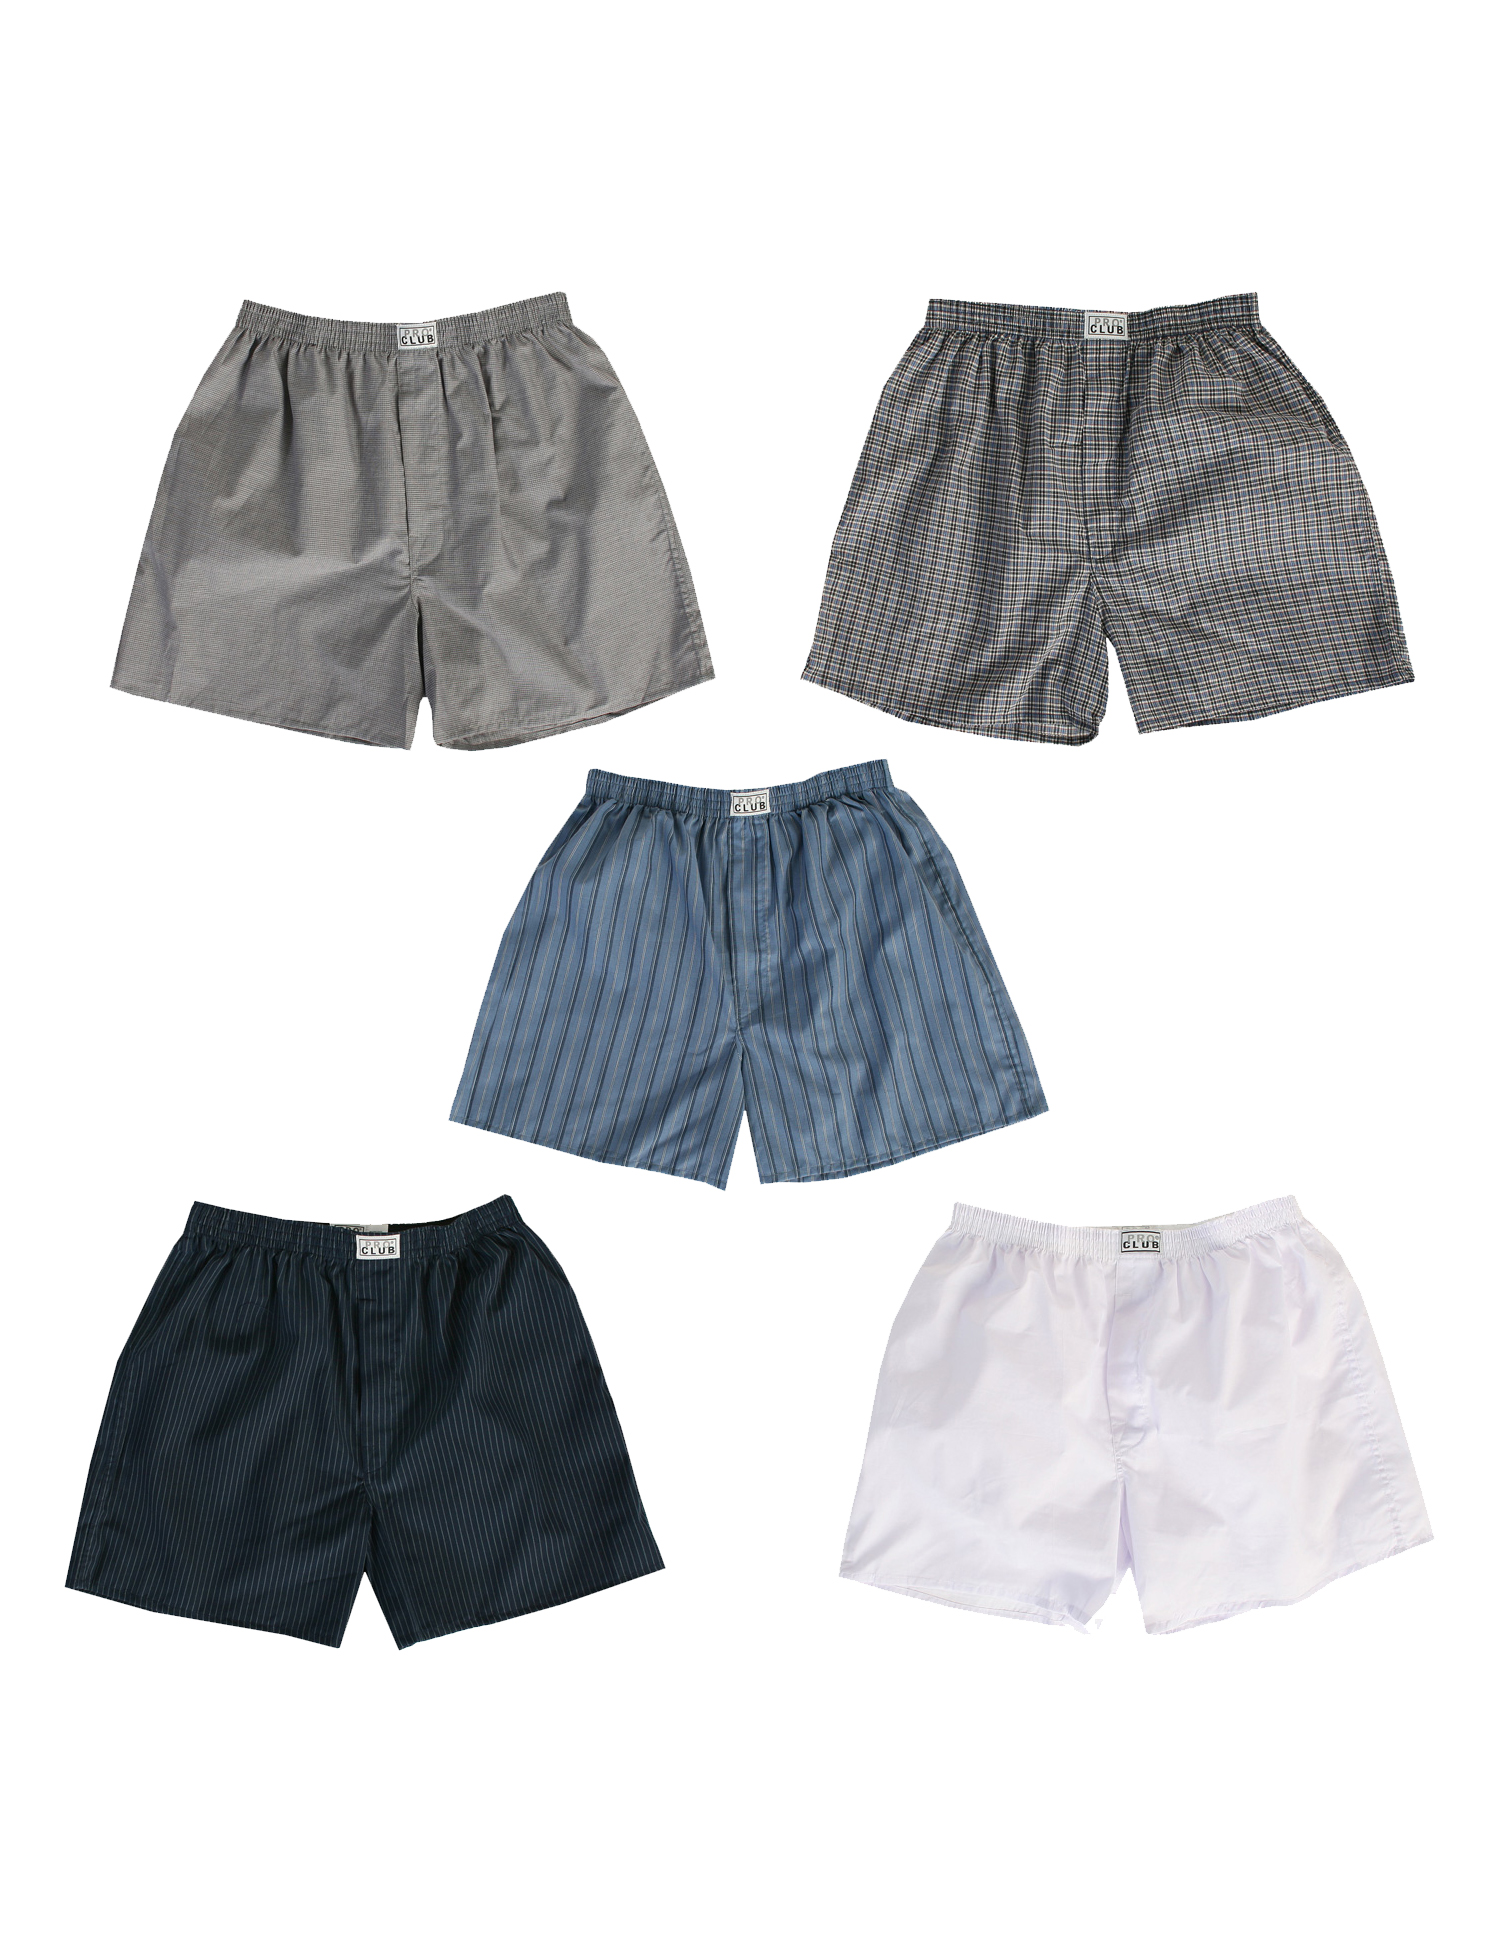 172-2 COLOR MIX Men's Boxer Trunks (2-Pack) - Underwear